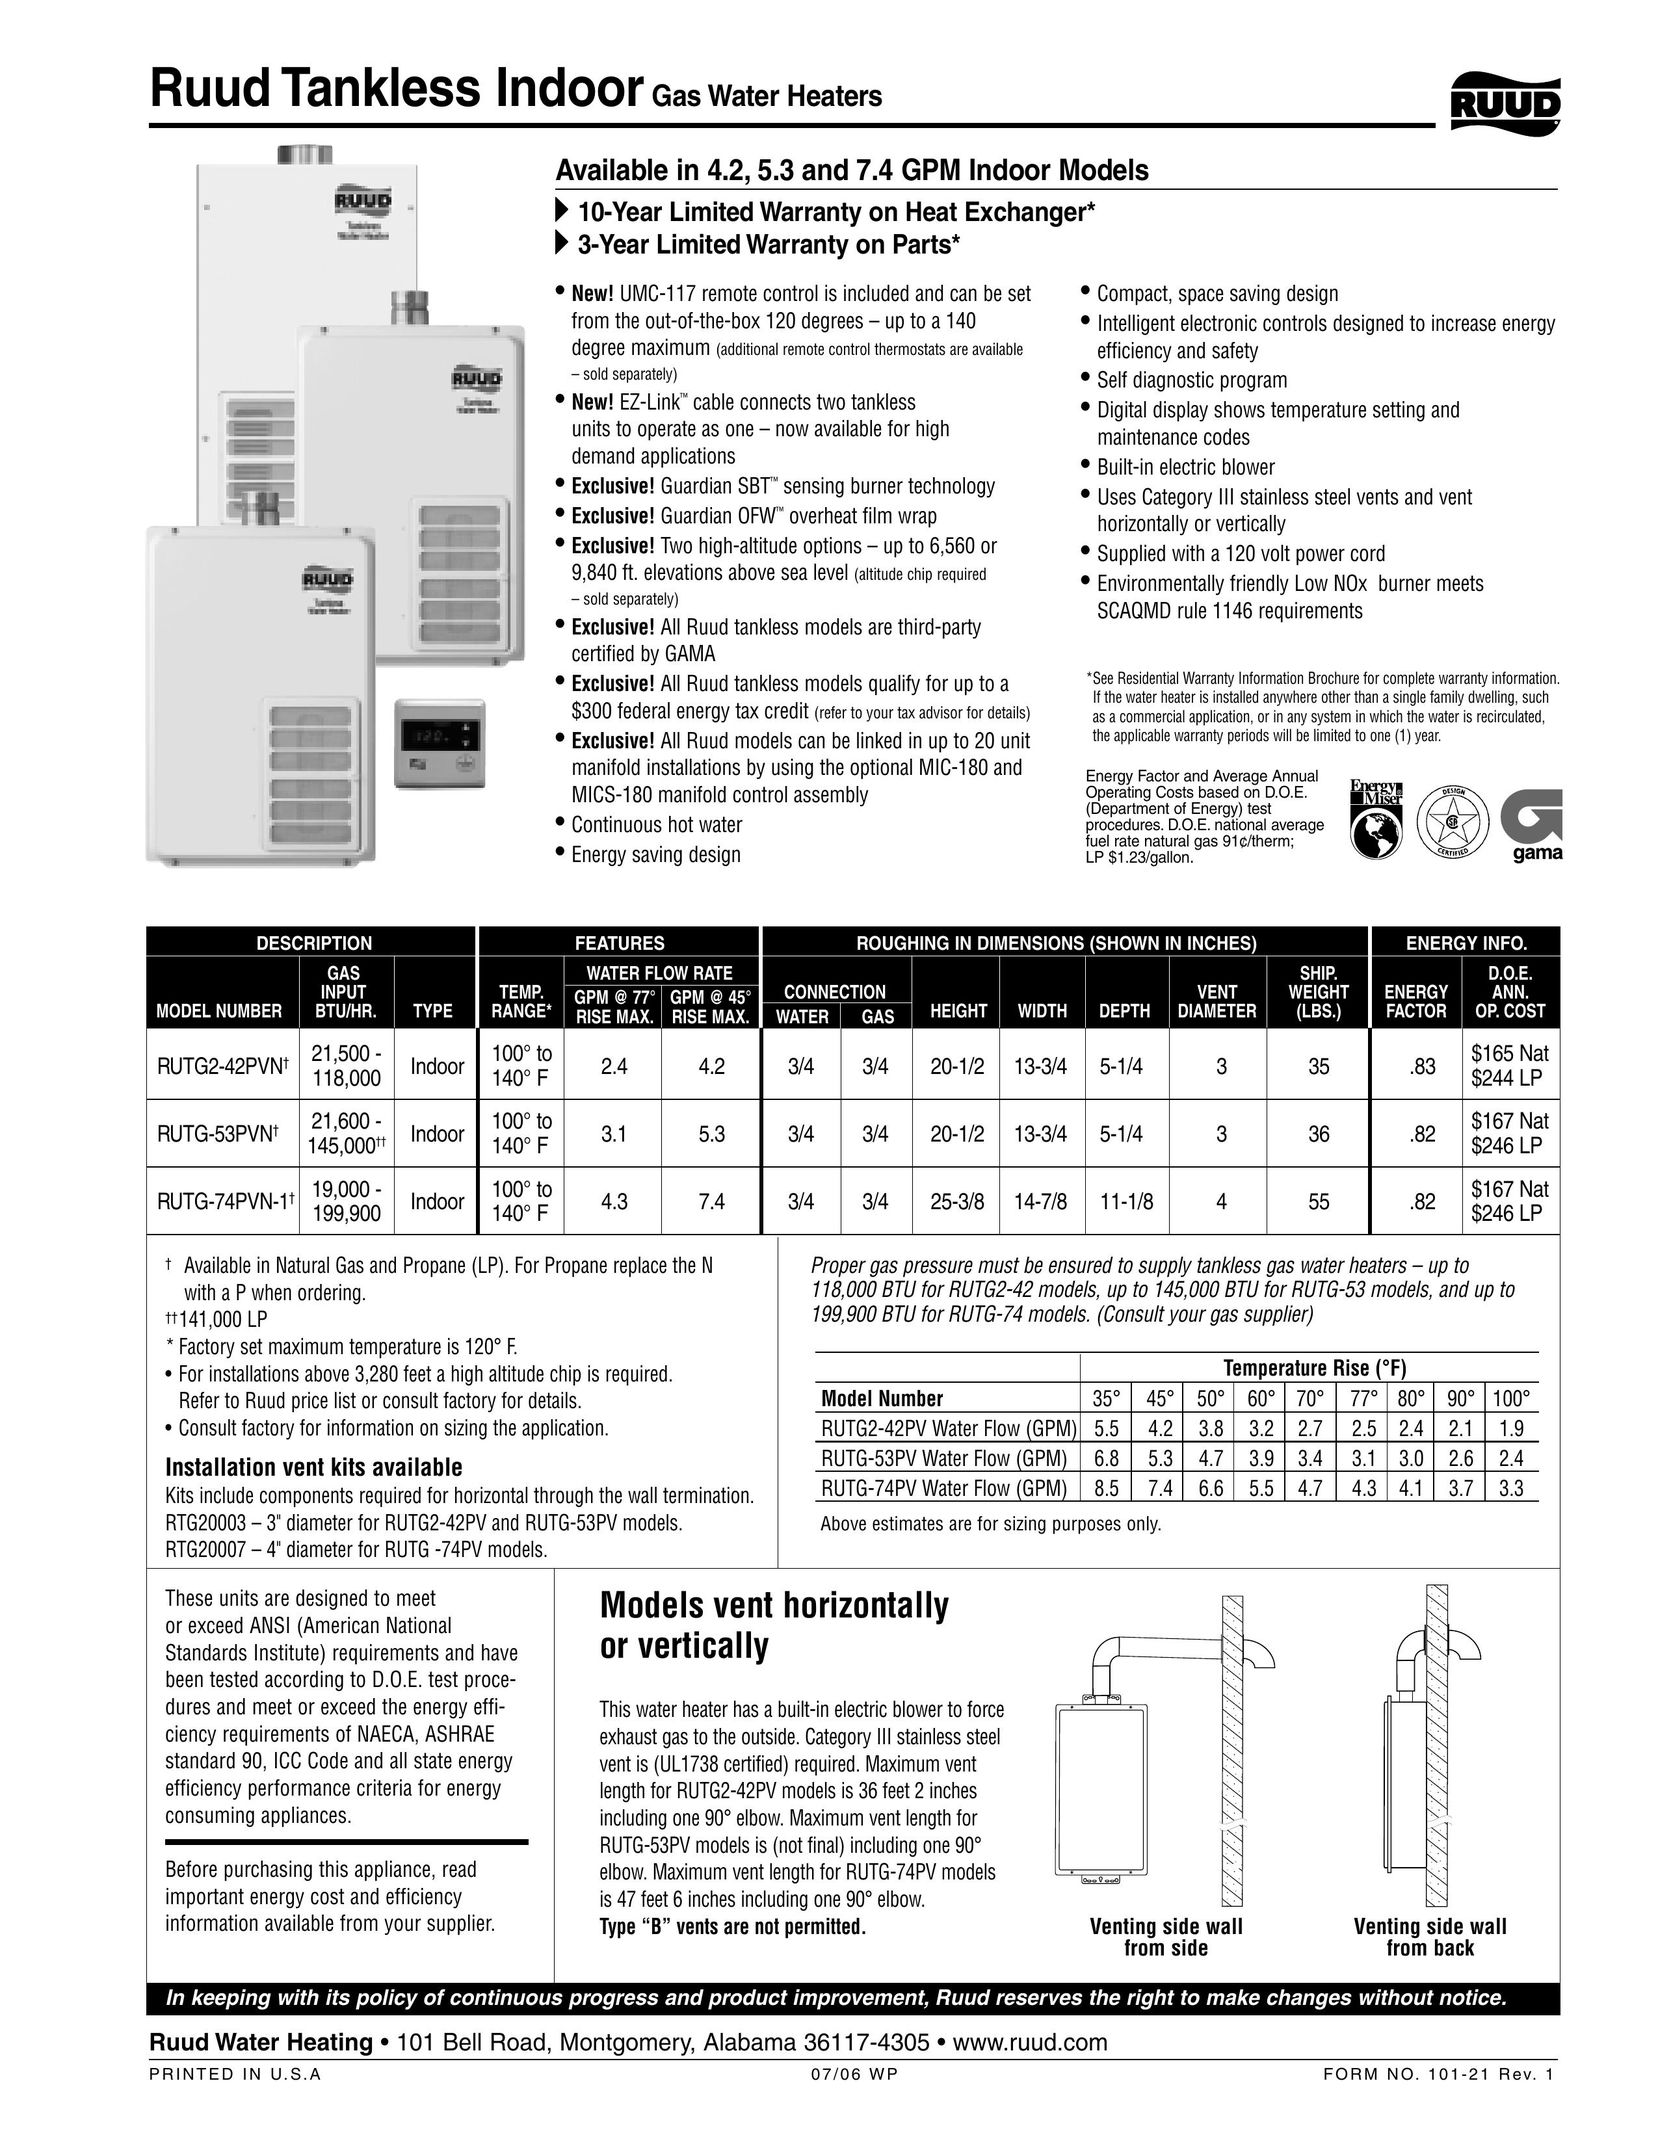 Ruud RUTG-53PV Water Heater User Manual